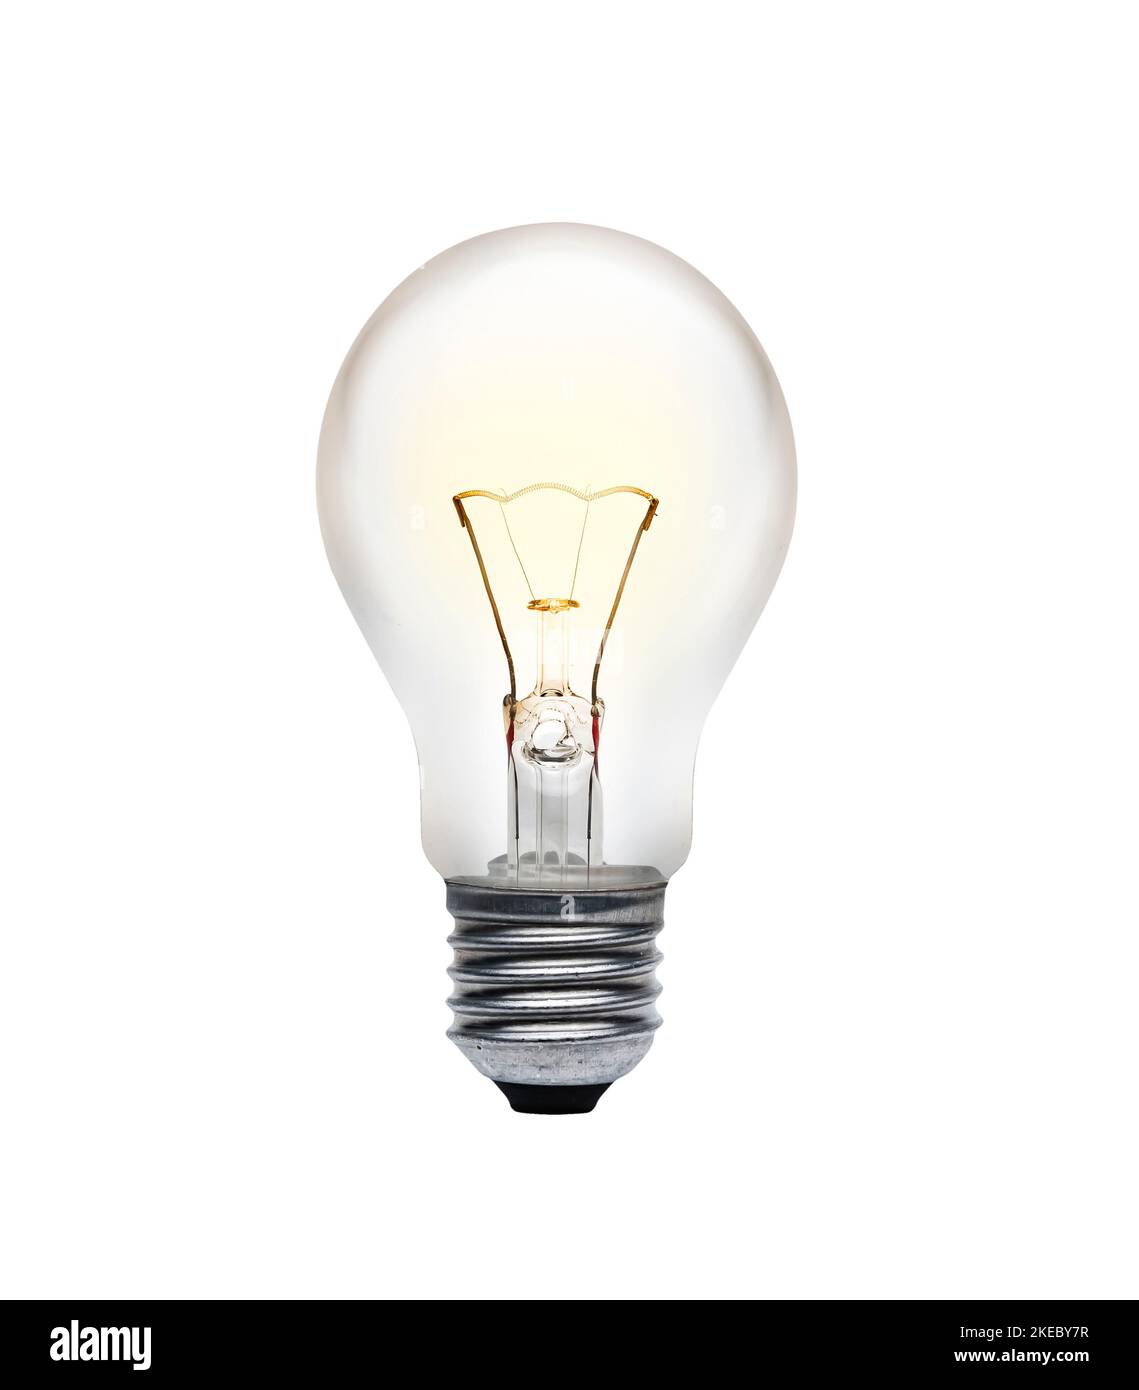 Glühlampe mit leuchtendem Glühfaden, isoliert auf weißem Hintergrund Stockfoto